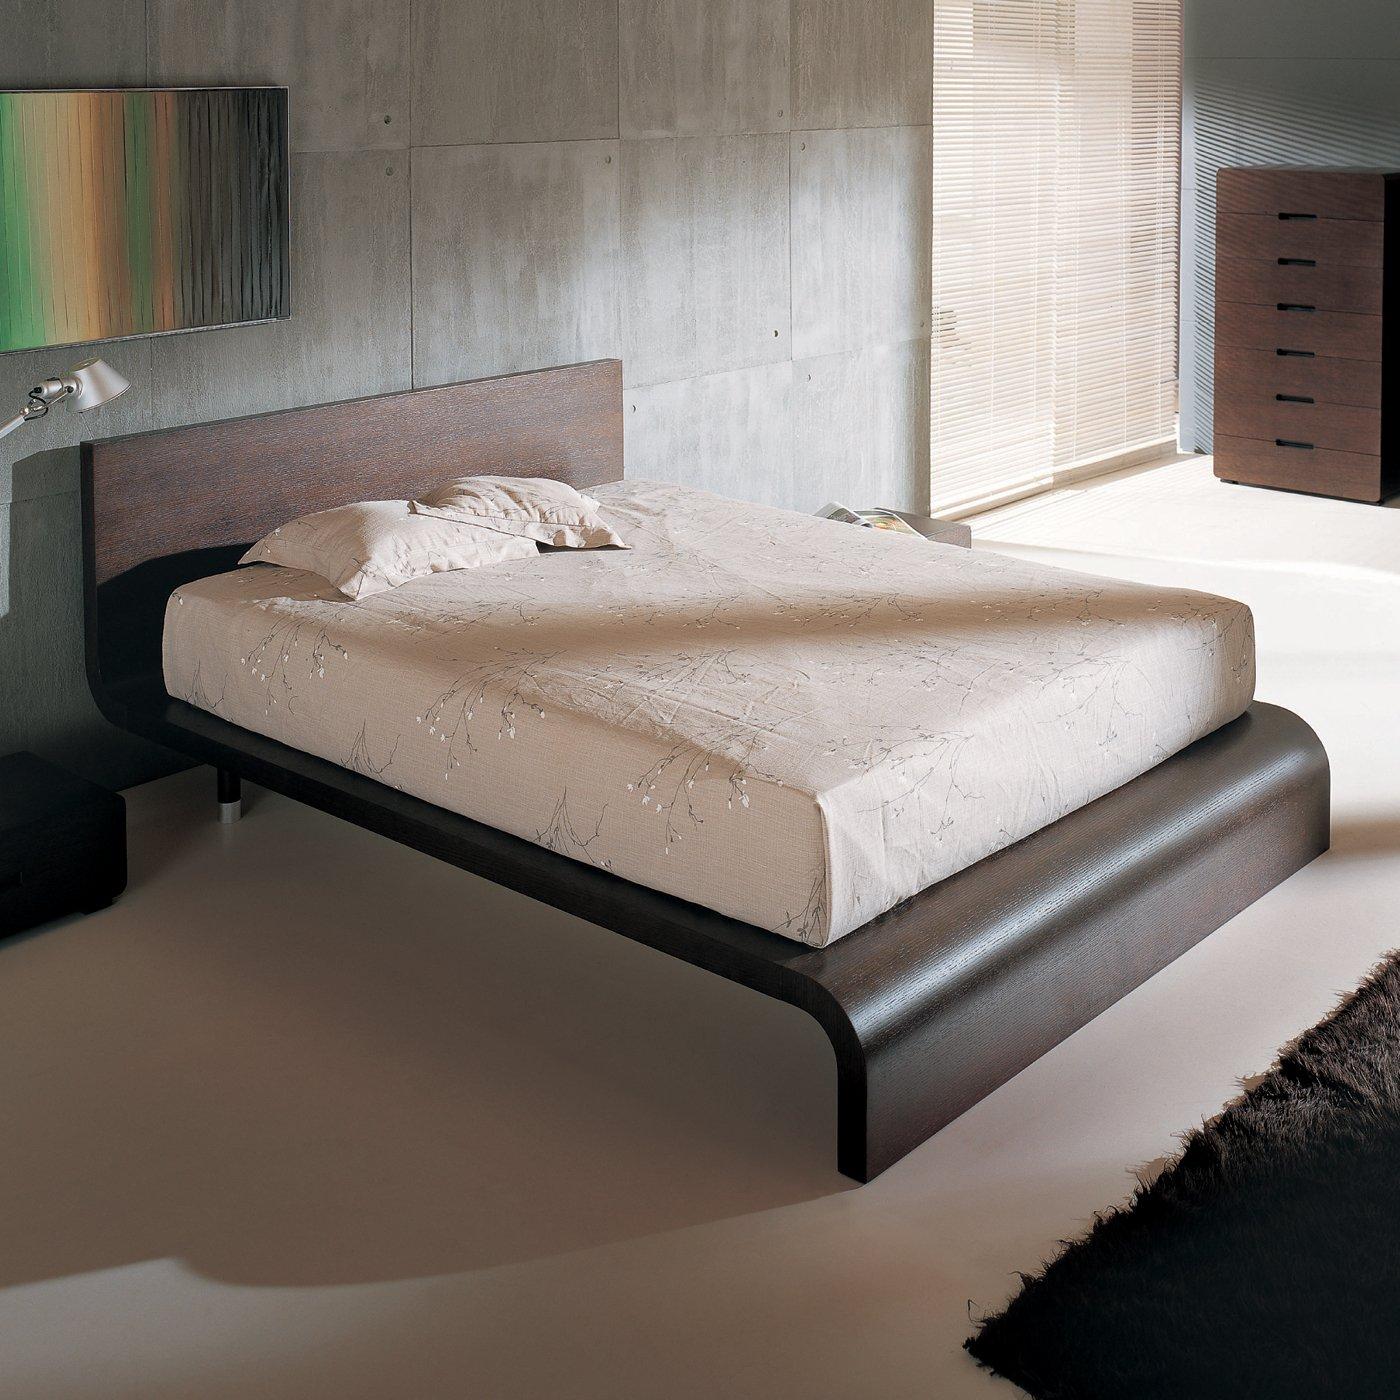 

    
BH Cosmo Wenge Queen Size Platform Bedroom Set 3pc
